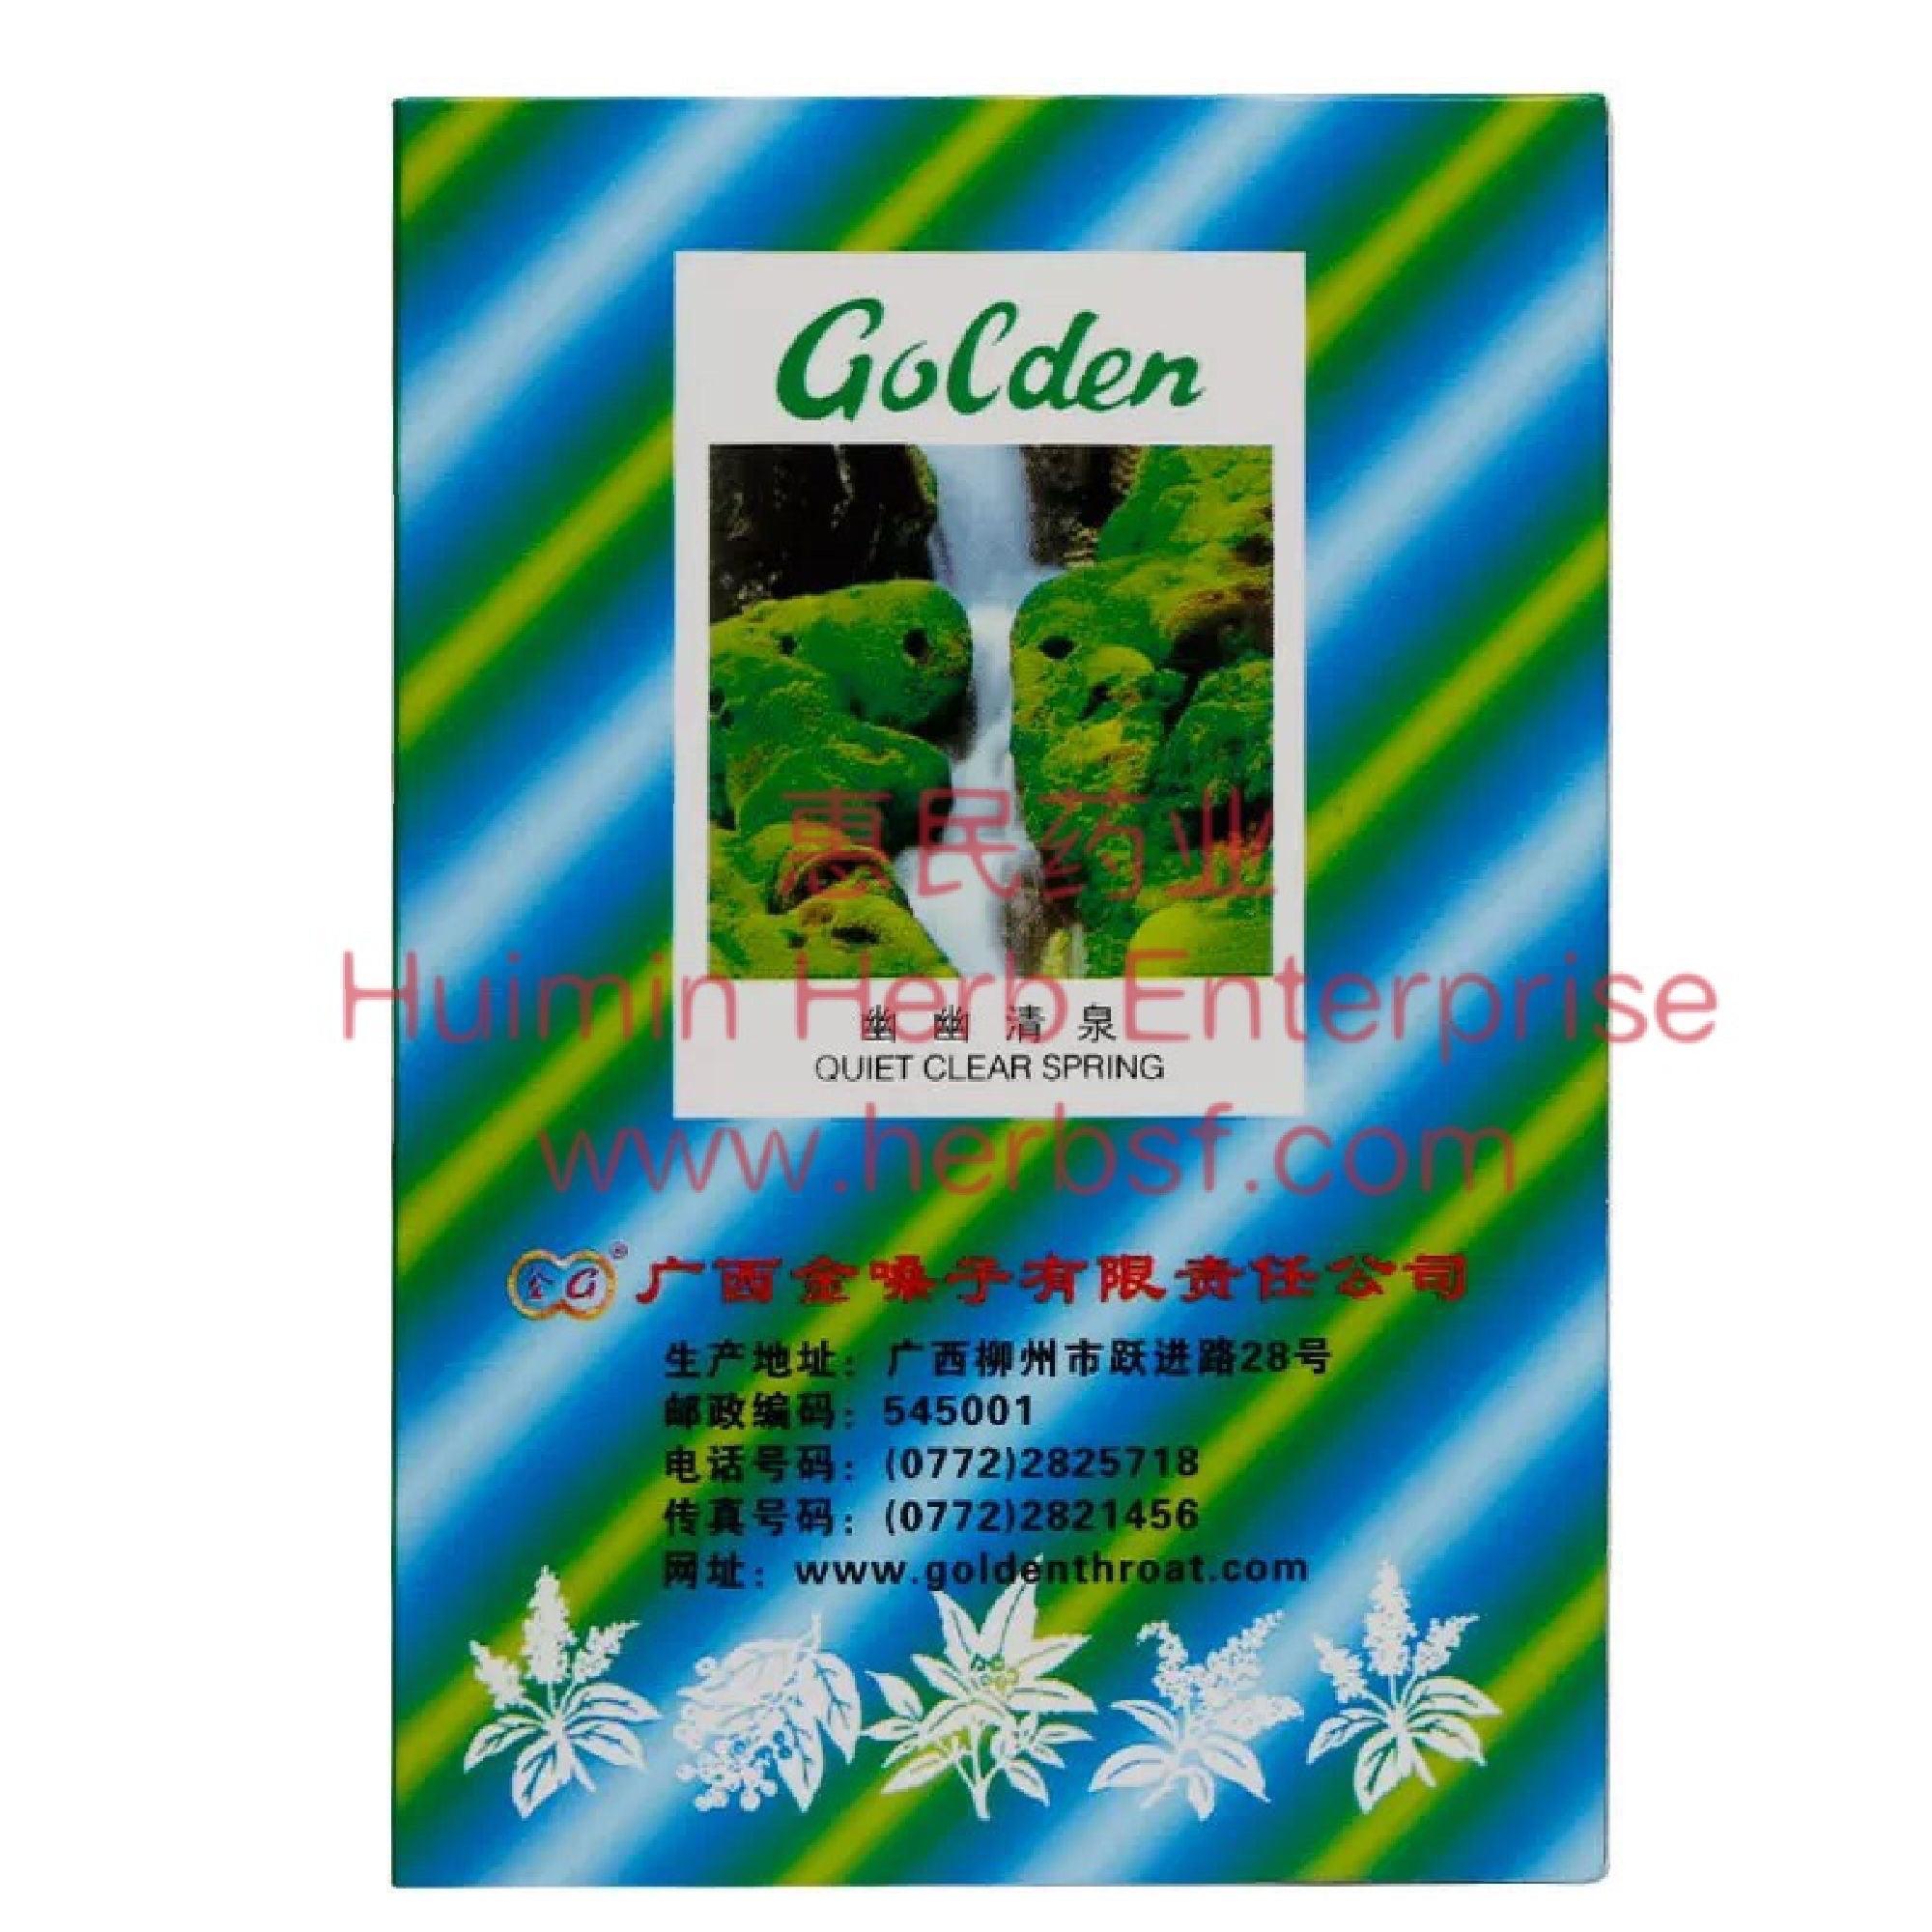 Golden Throat lozenges - Huimin Herb Online, LLC